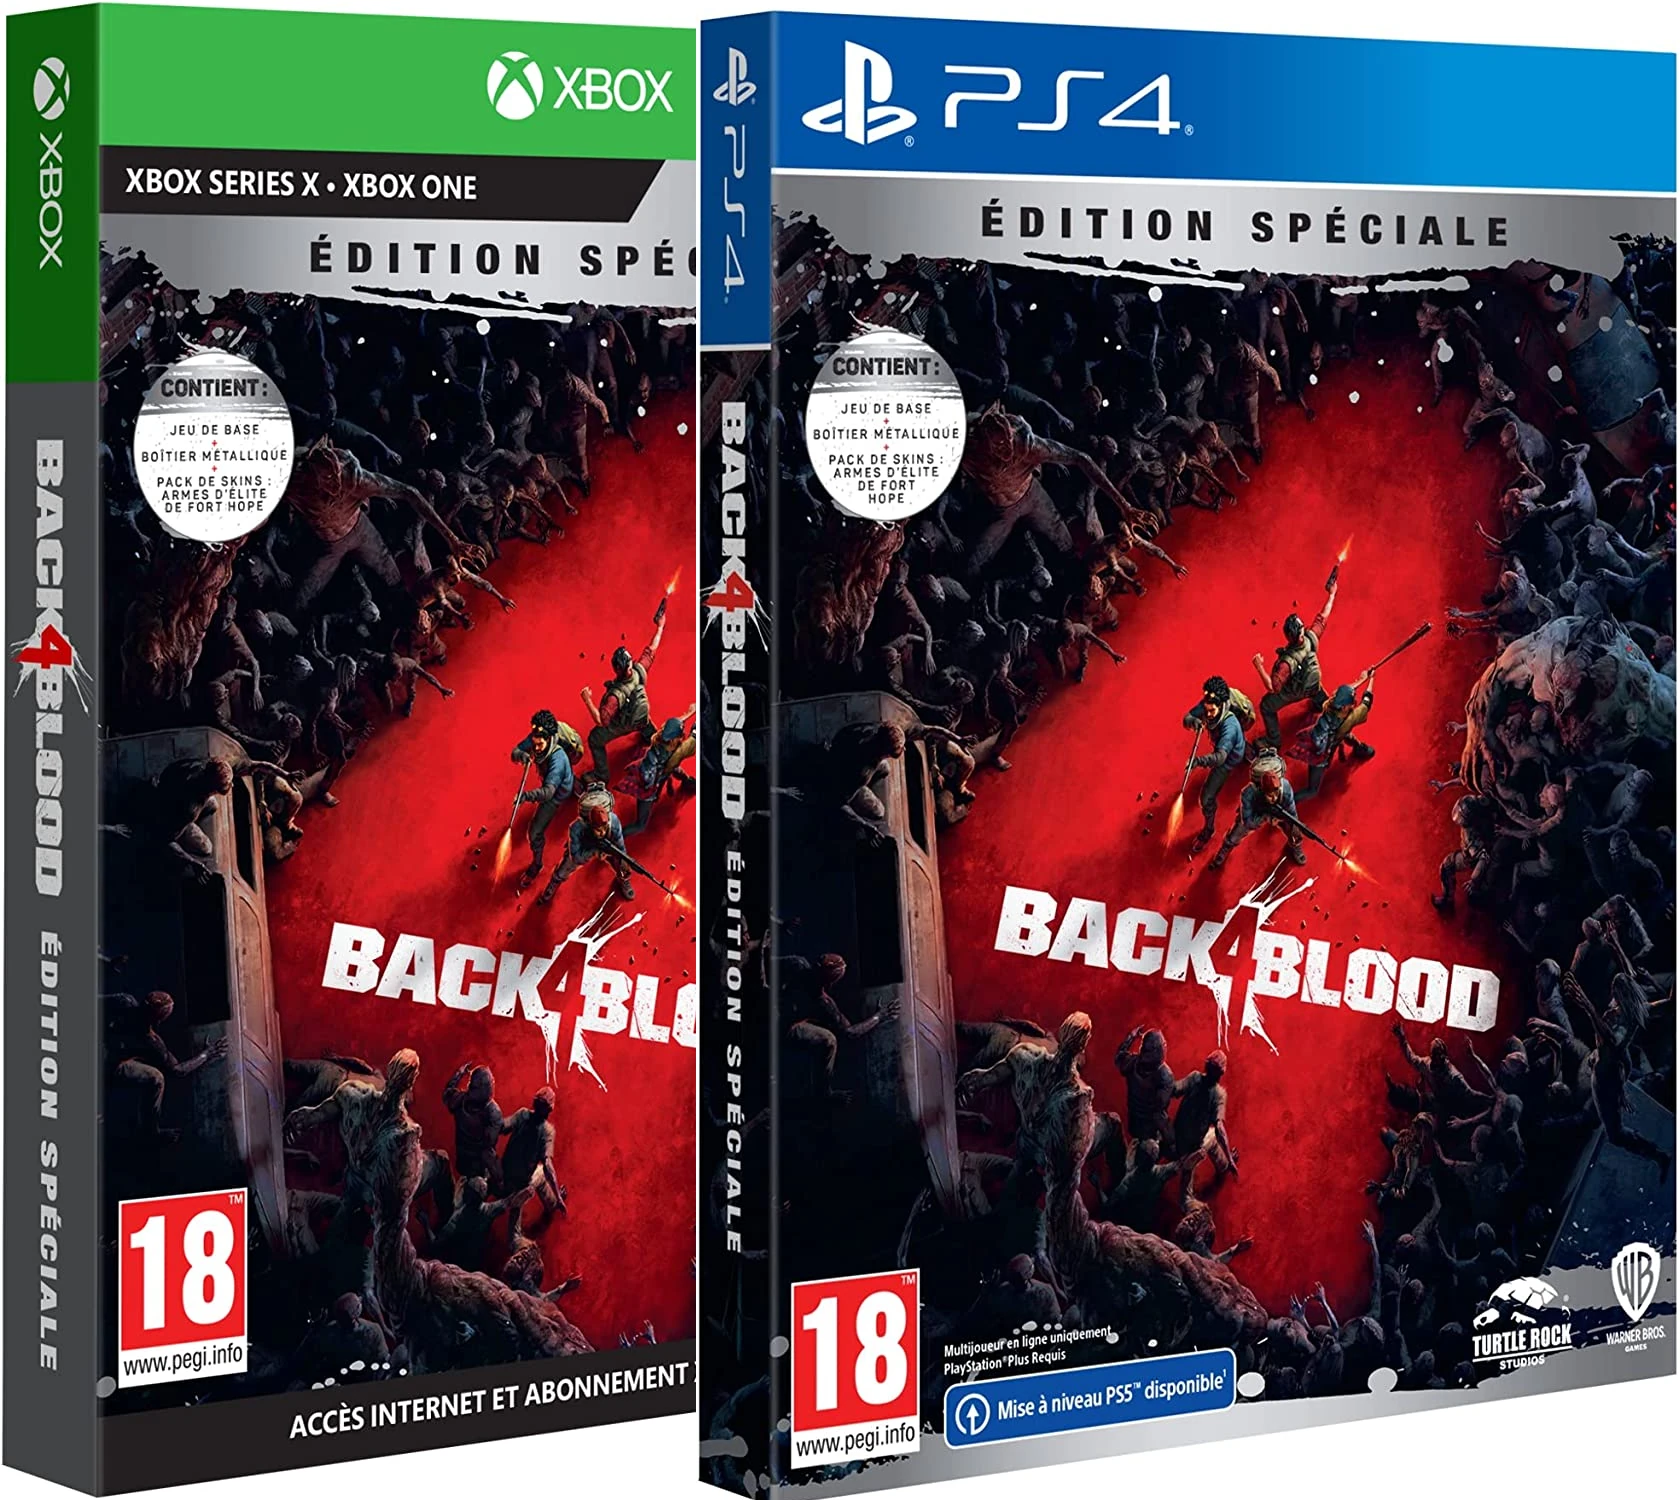 Back 4 Blood - Edition Spéciale Steelbook (5,99€ sur Xbox)